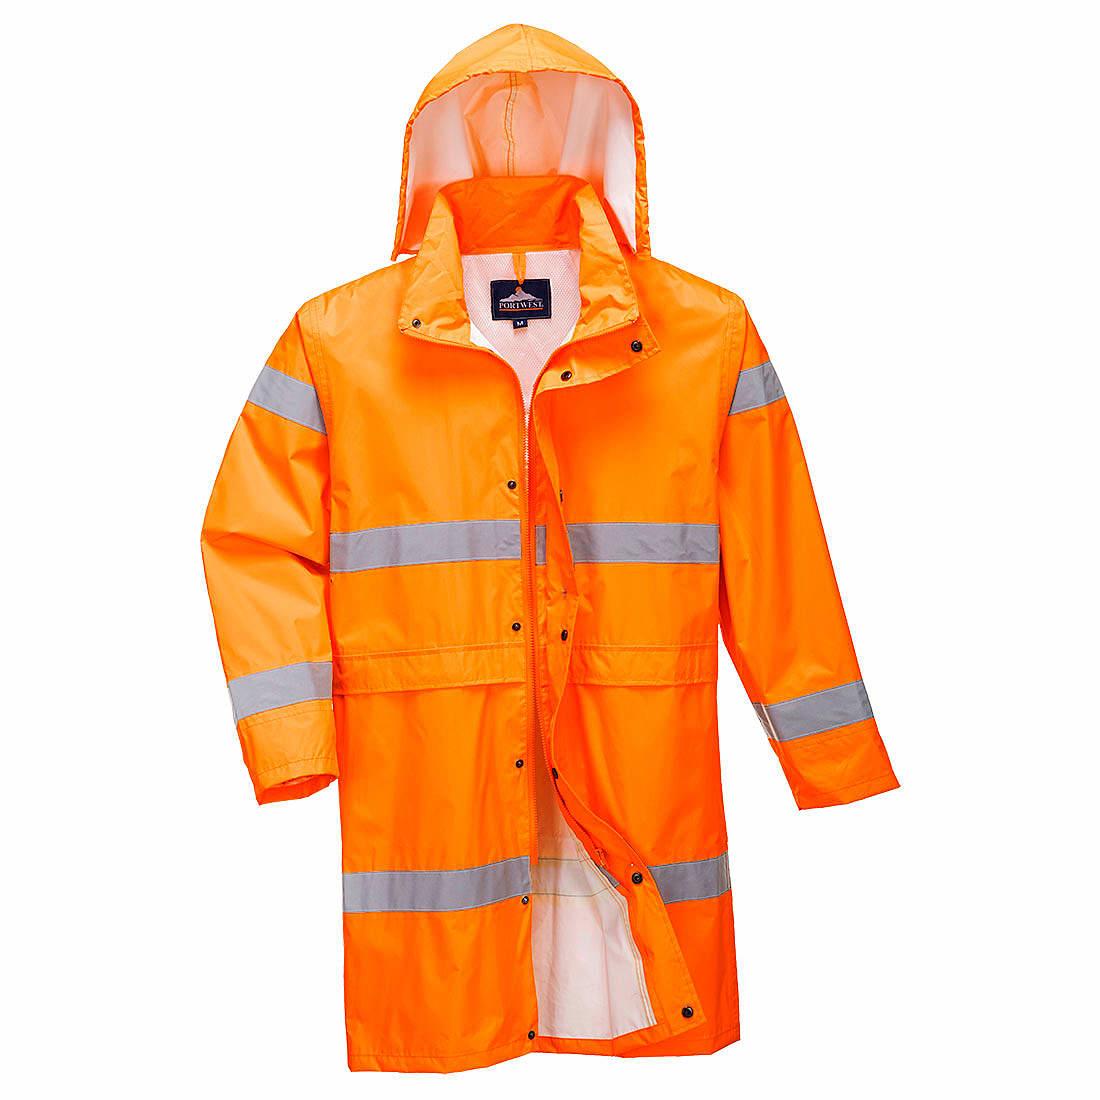 Portwest Hi-Viz Coat 100cm in Orange (Product Code: H442)